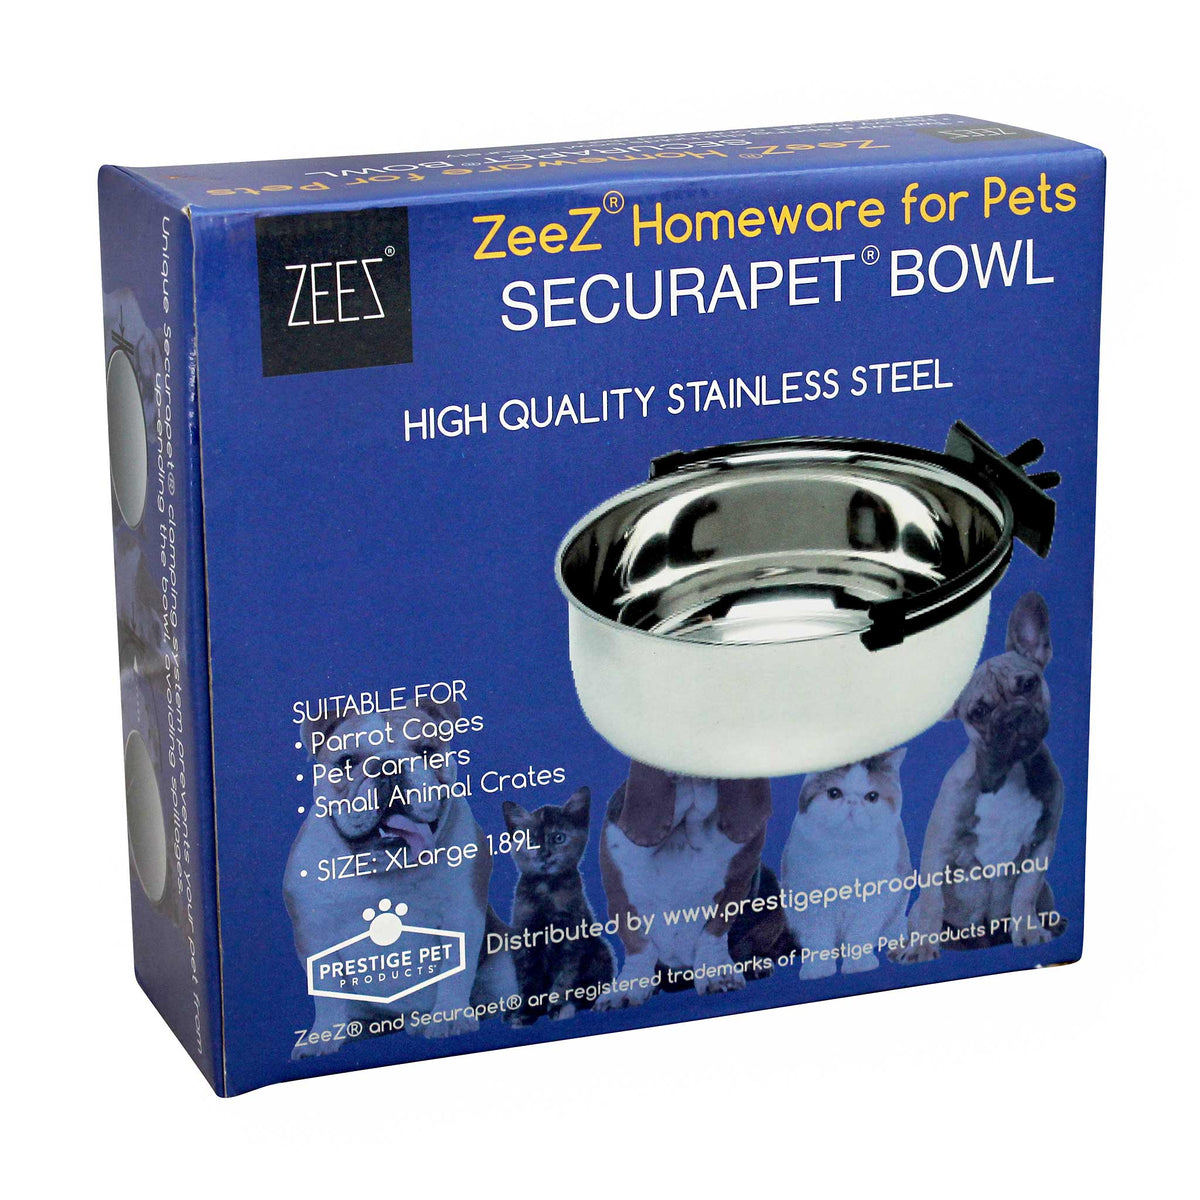 ZEEZ SecuraPet Stainless Steel Bowl